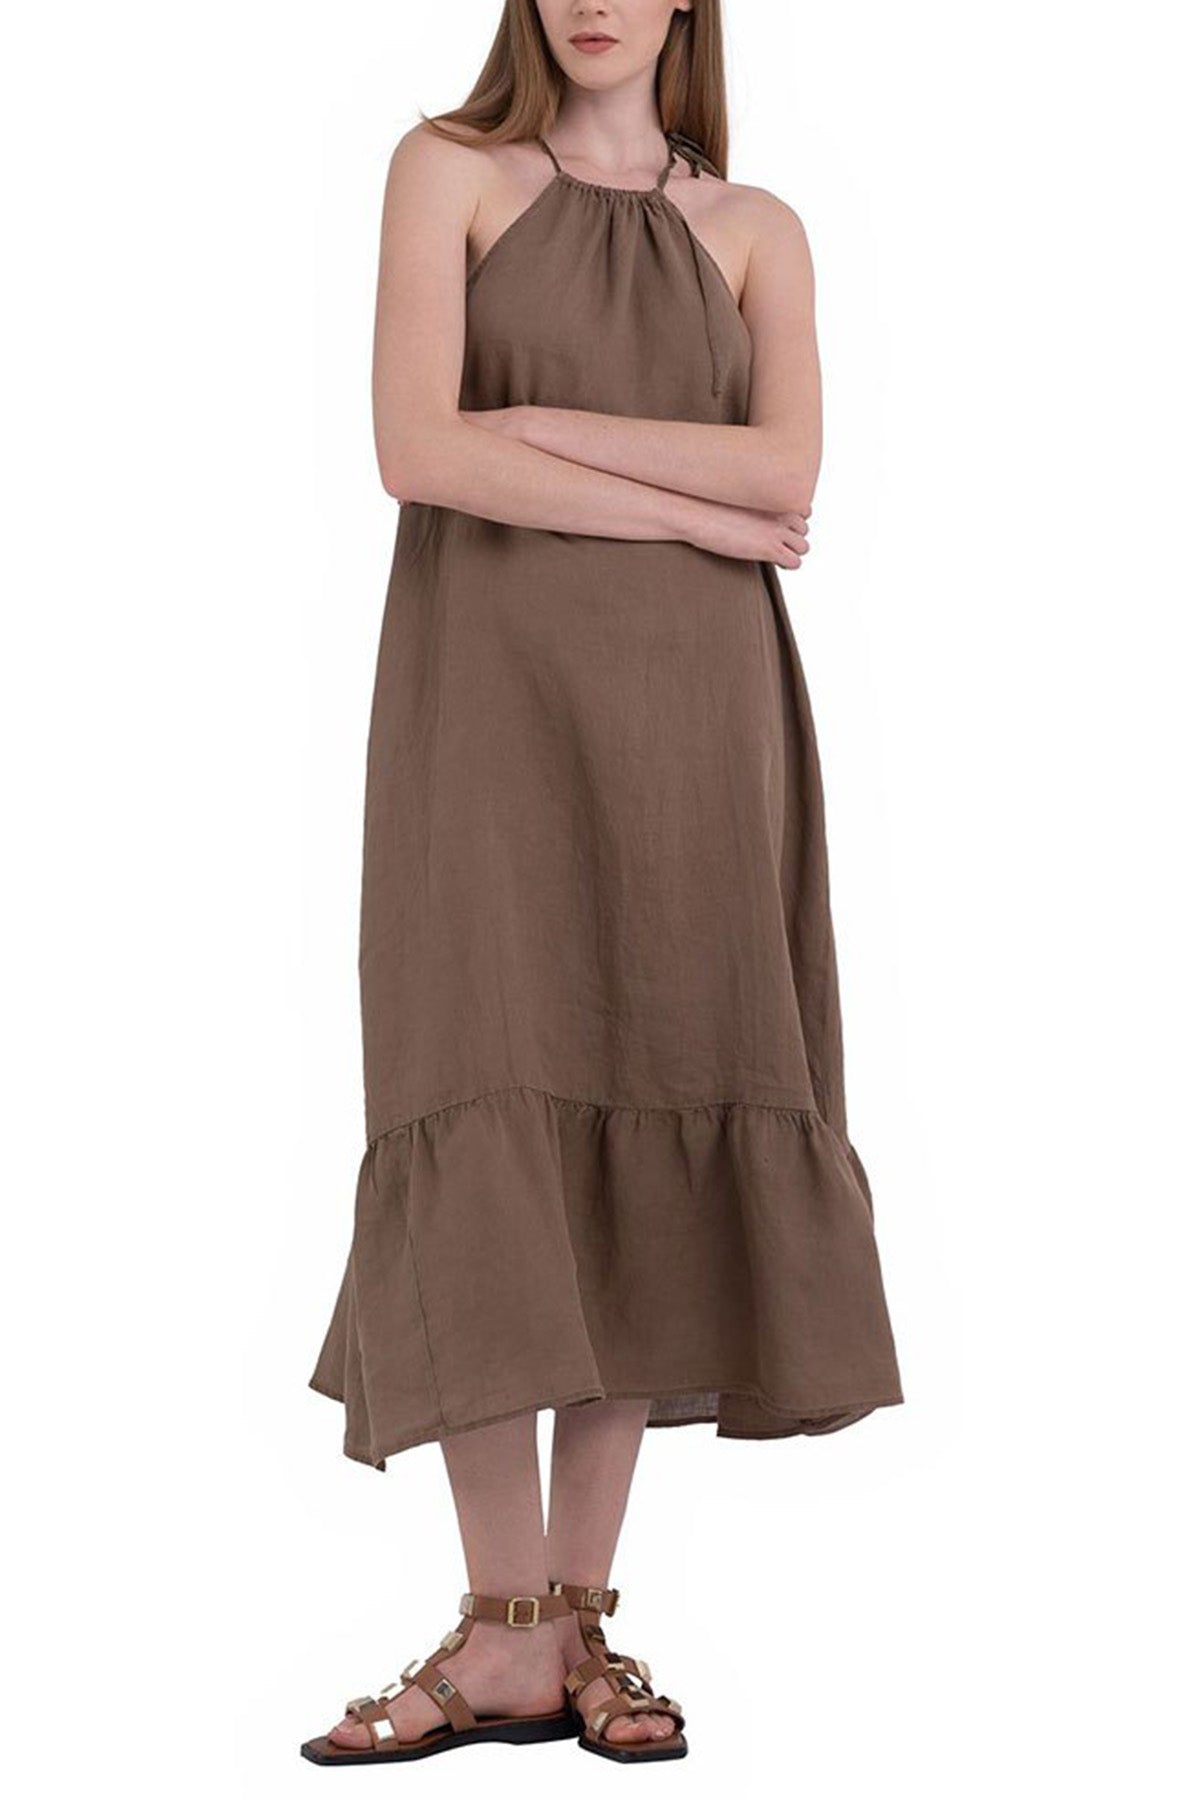 Replay Maxi Keten Elbise-Libas Trendy Fashion Store